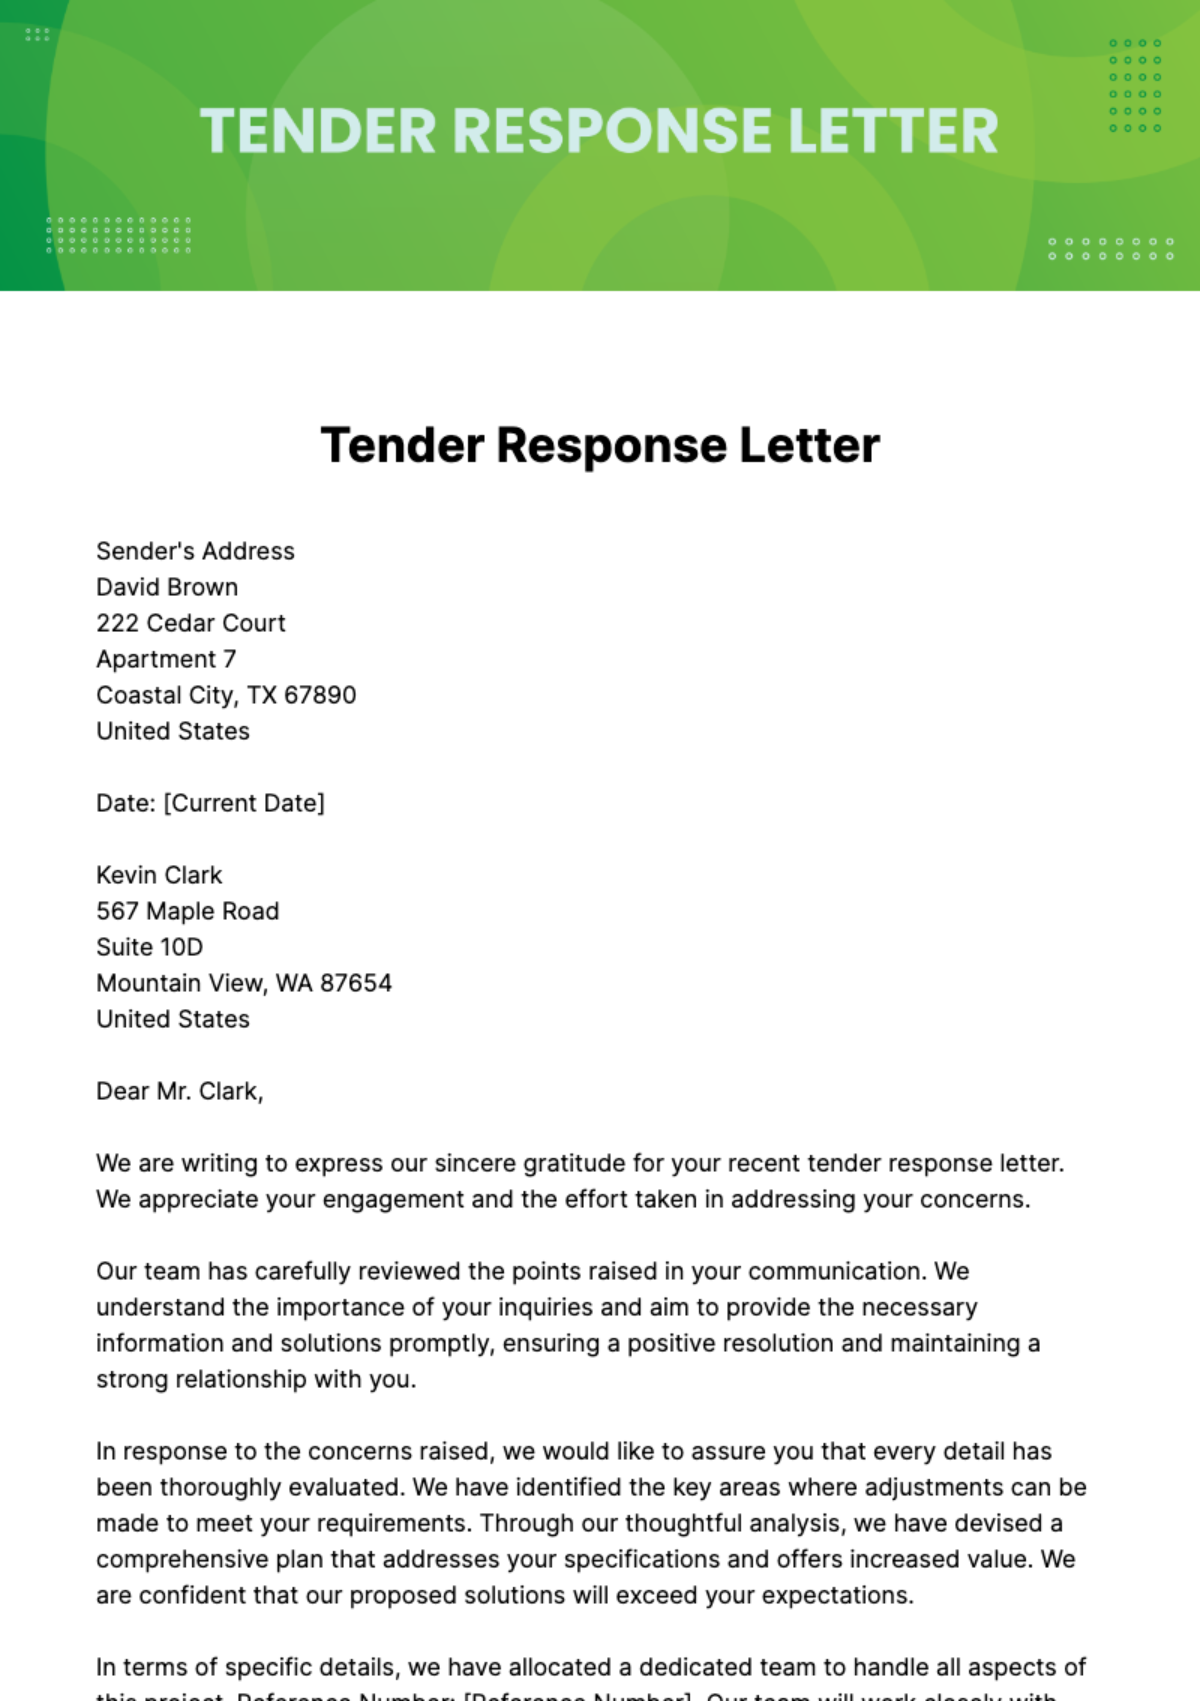 Free Tender Response Letter Template